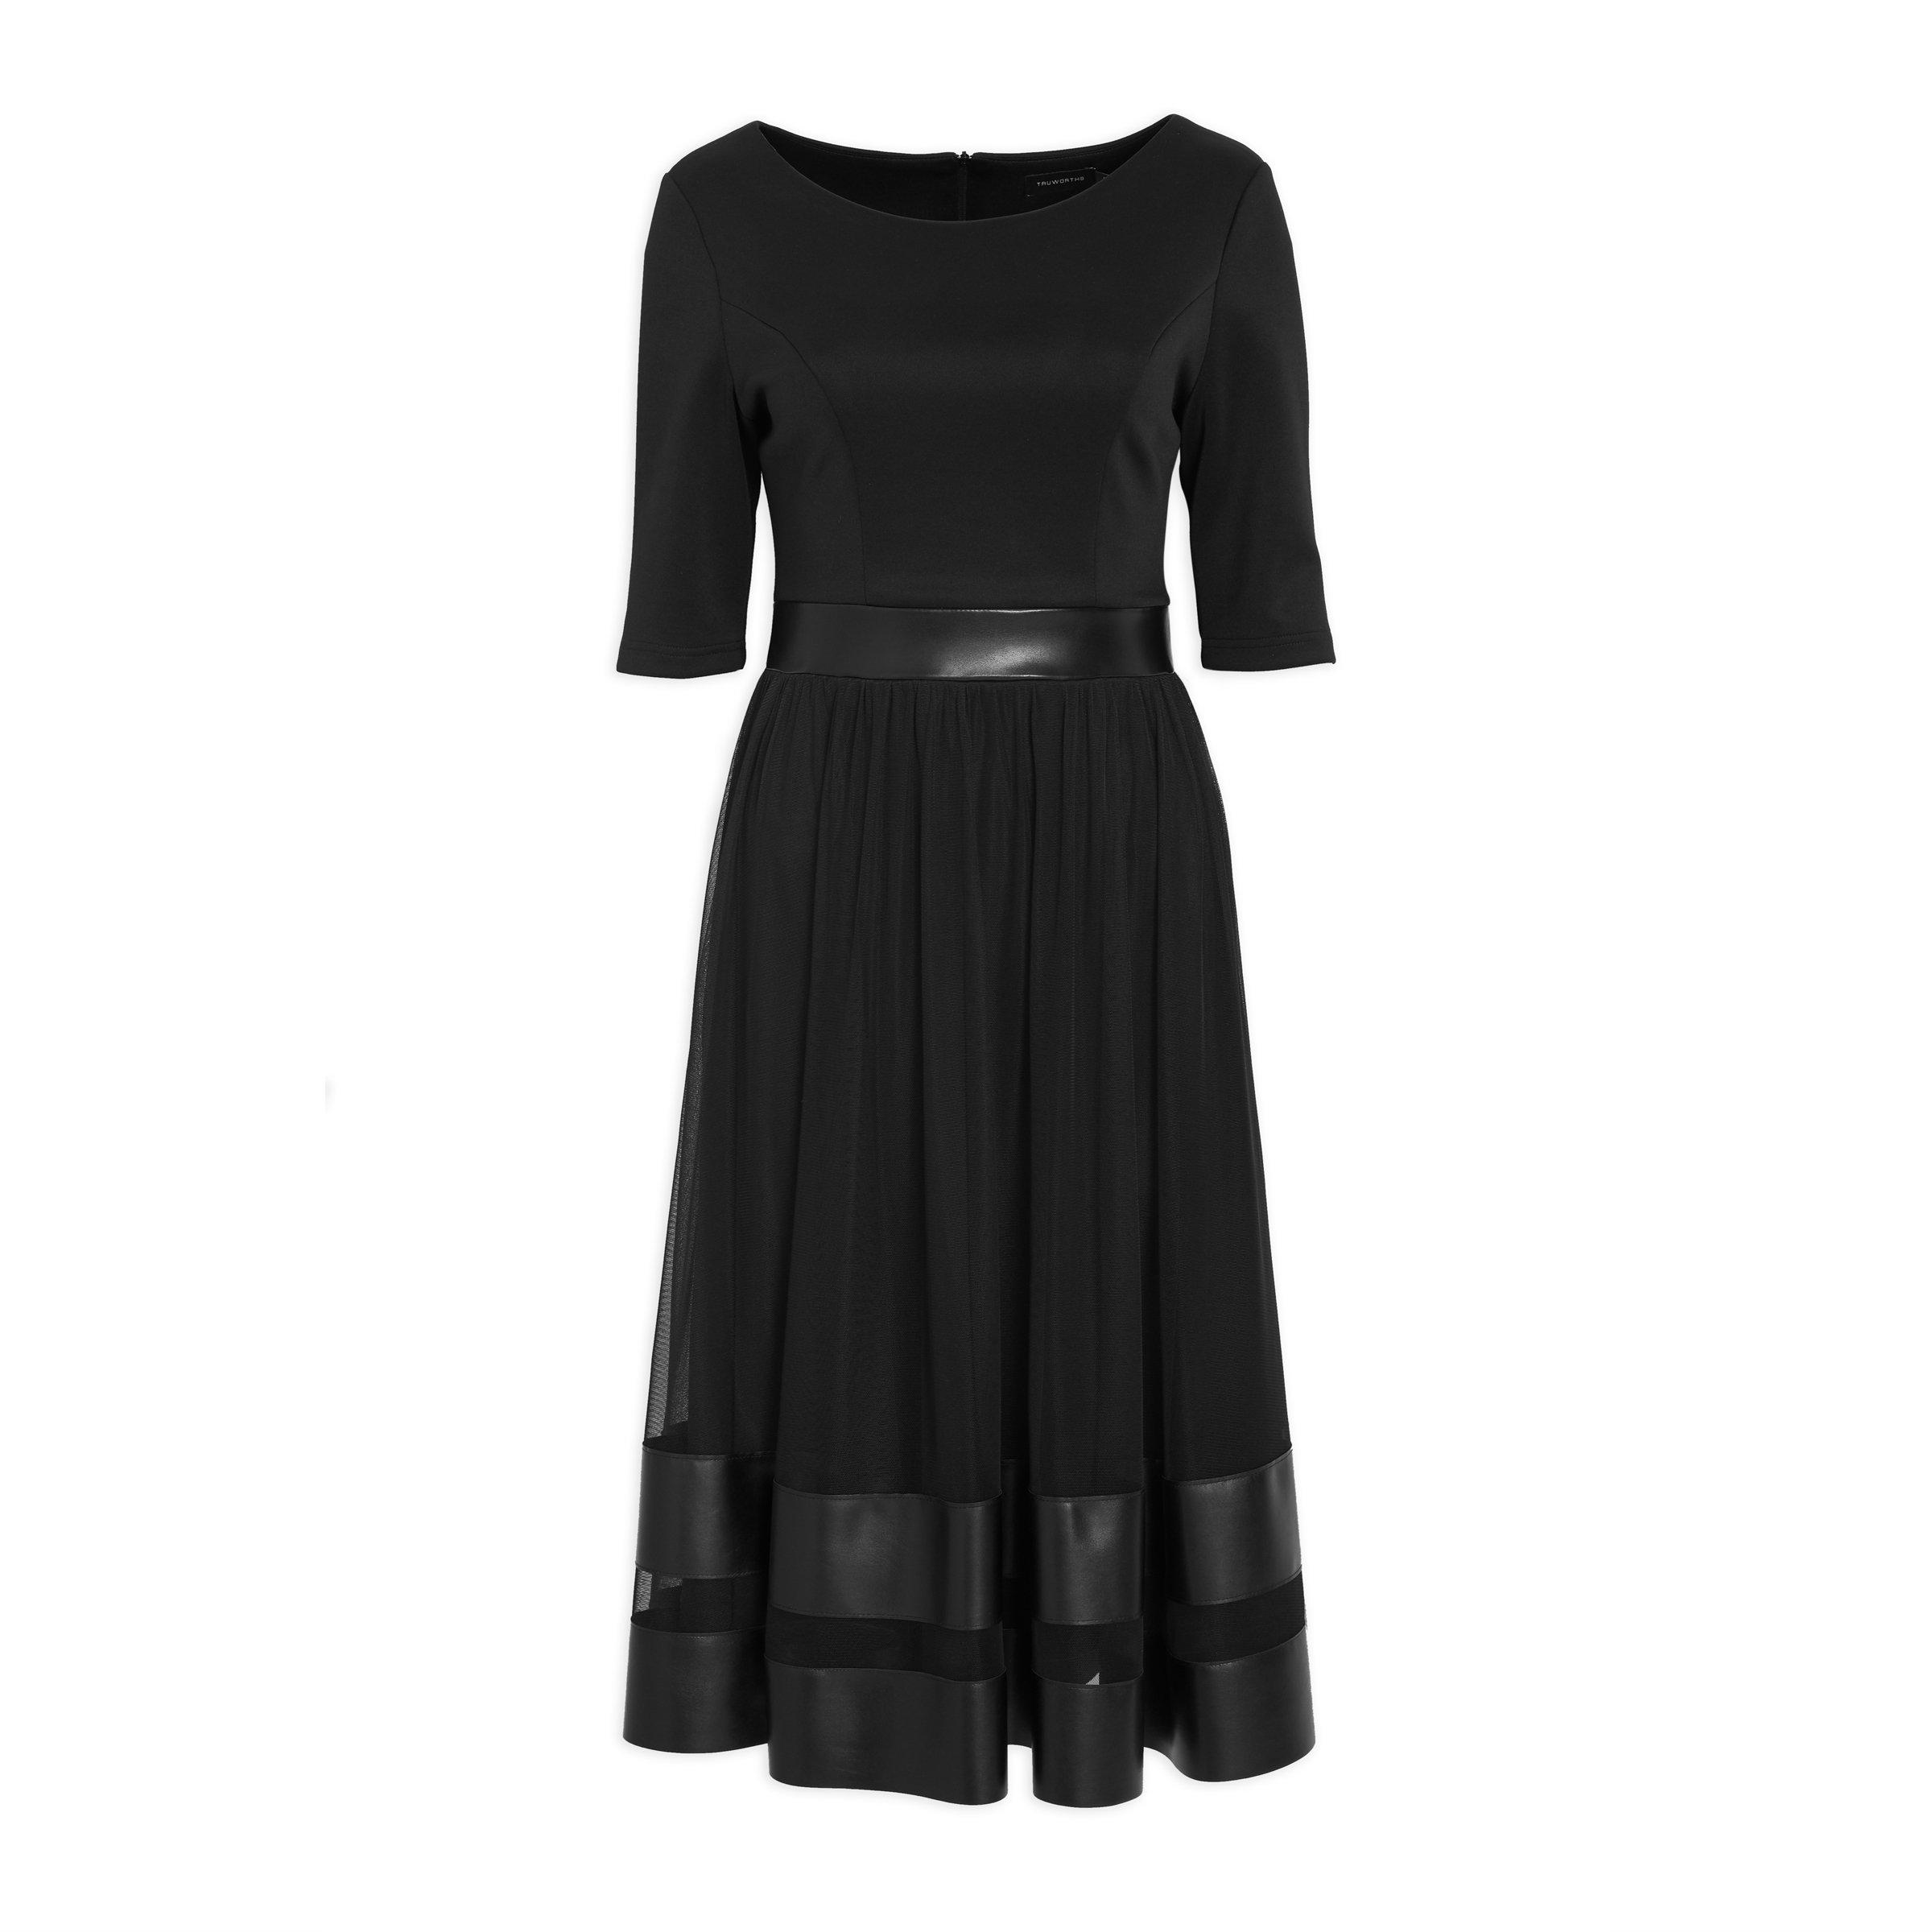 black formal dresses at truworths